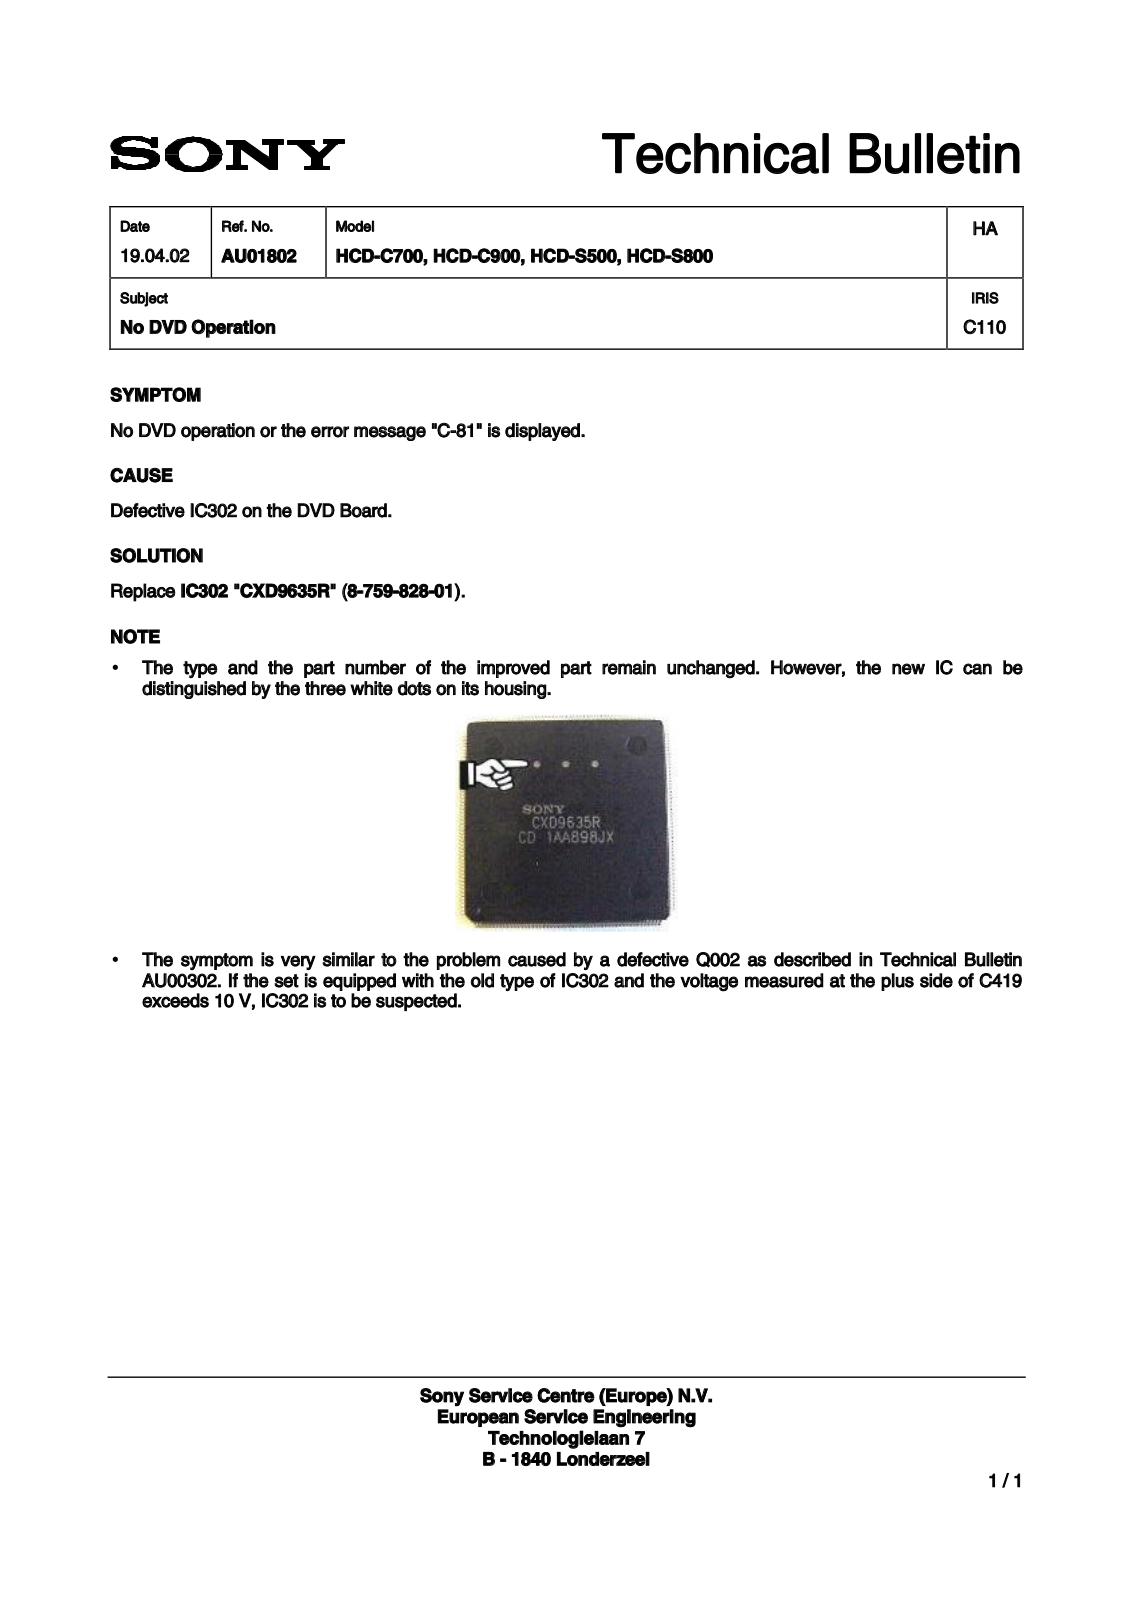 SONY HCD-C700, HCD-S500, HCD-S800, HCD-C900 Technical Bulletin 2